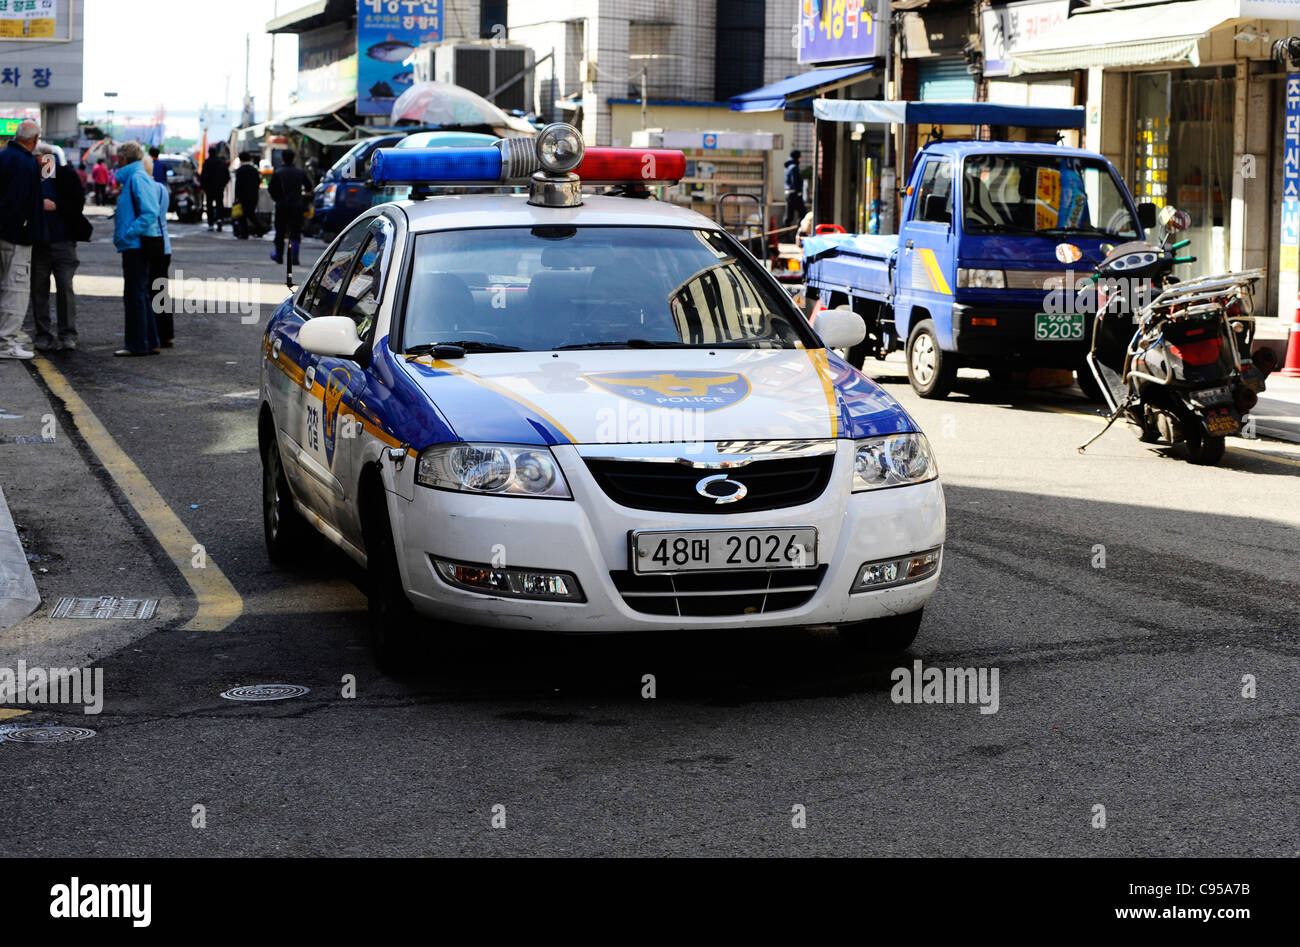 A police car in Busan, South Korea. Stock Photo